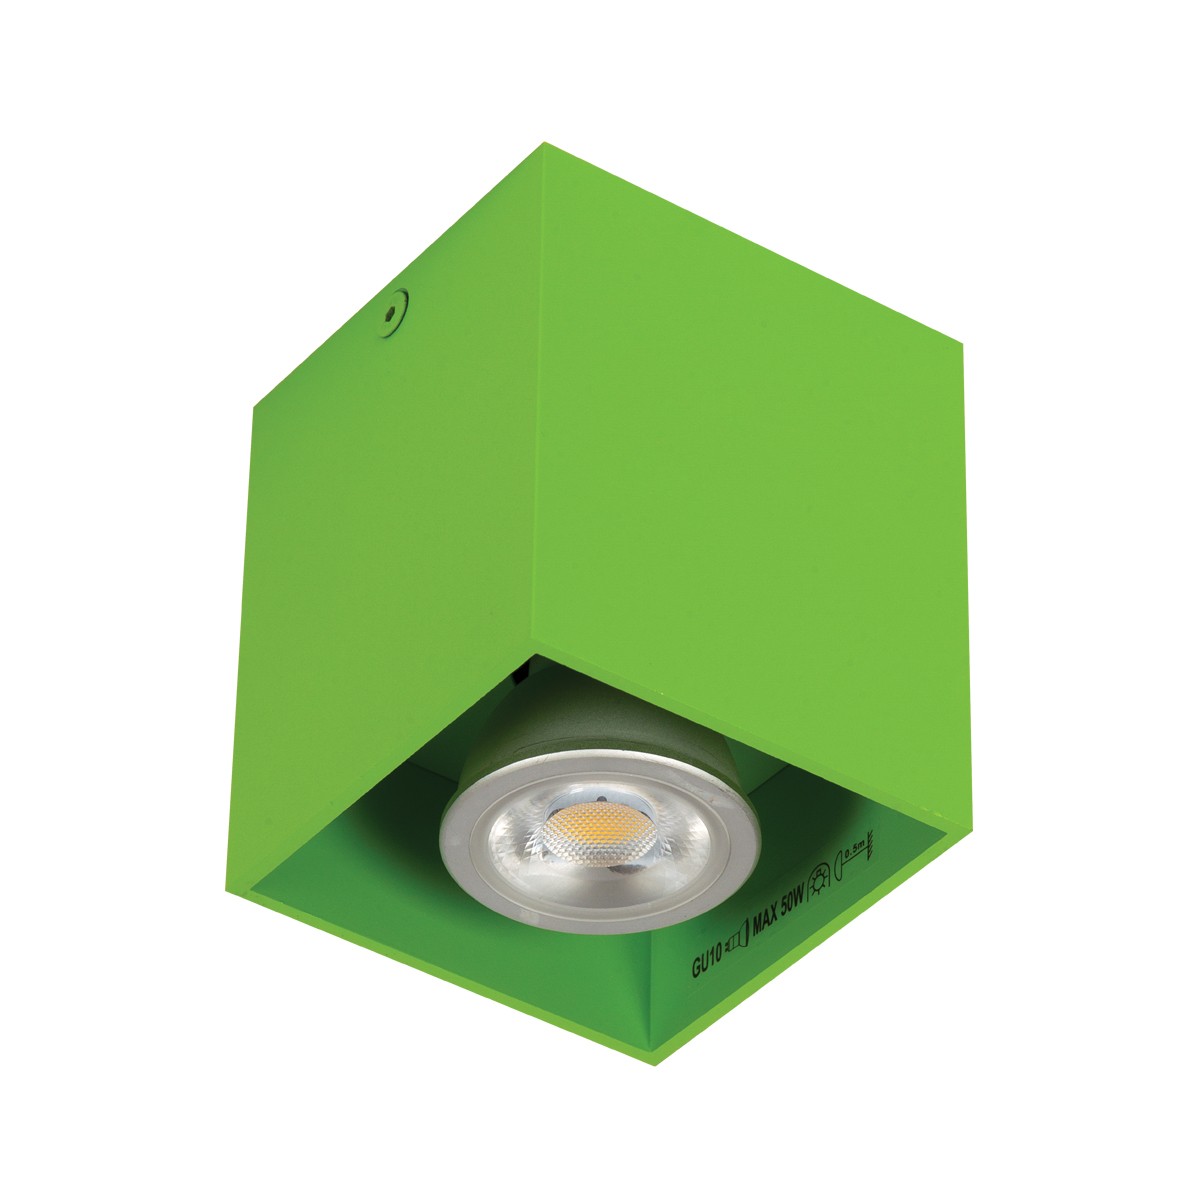 Φωτιστικό αλουμινίου οροφής κύβος  GU10 max 35W πράσινο 82χ82χ95 VK/03001/GR